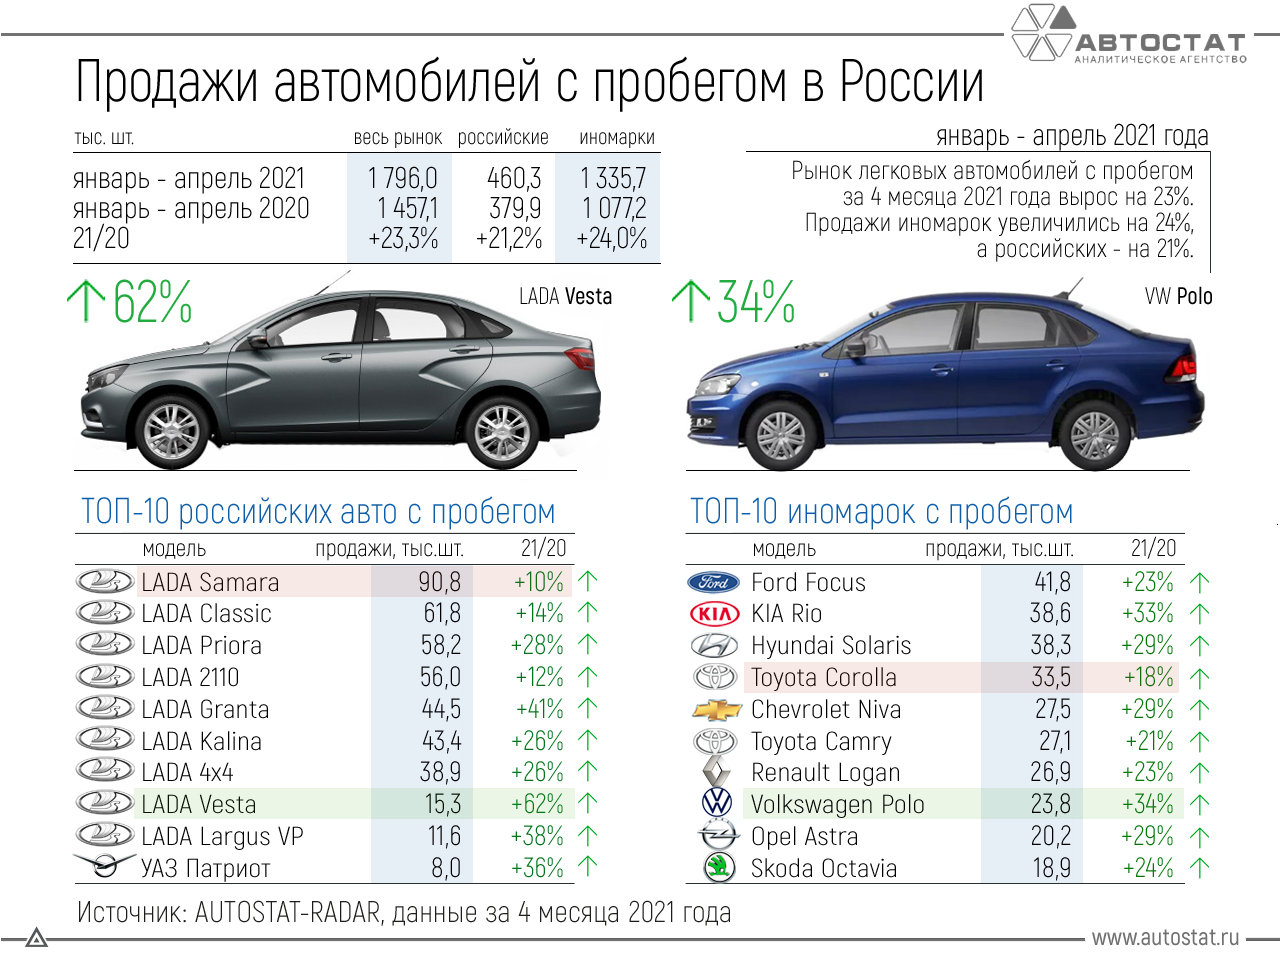 Топ-10 продаваемых китайских автомобилей в россии на 2021